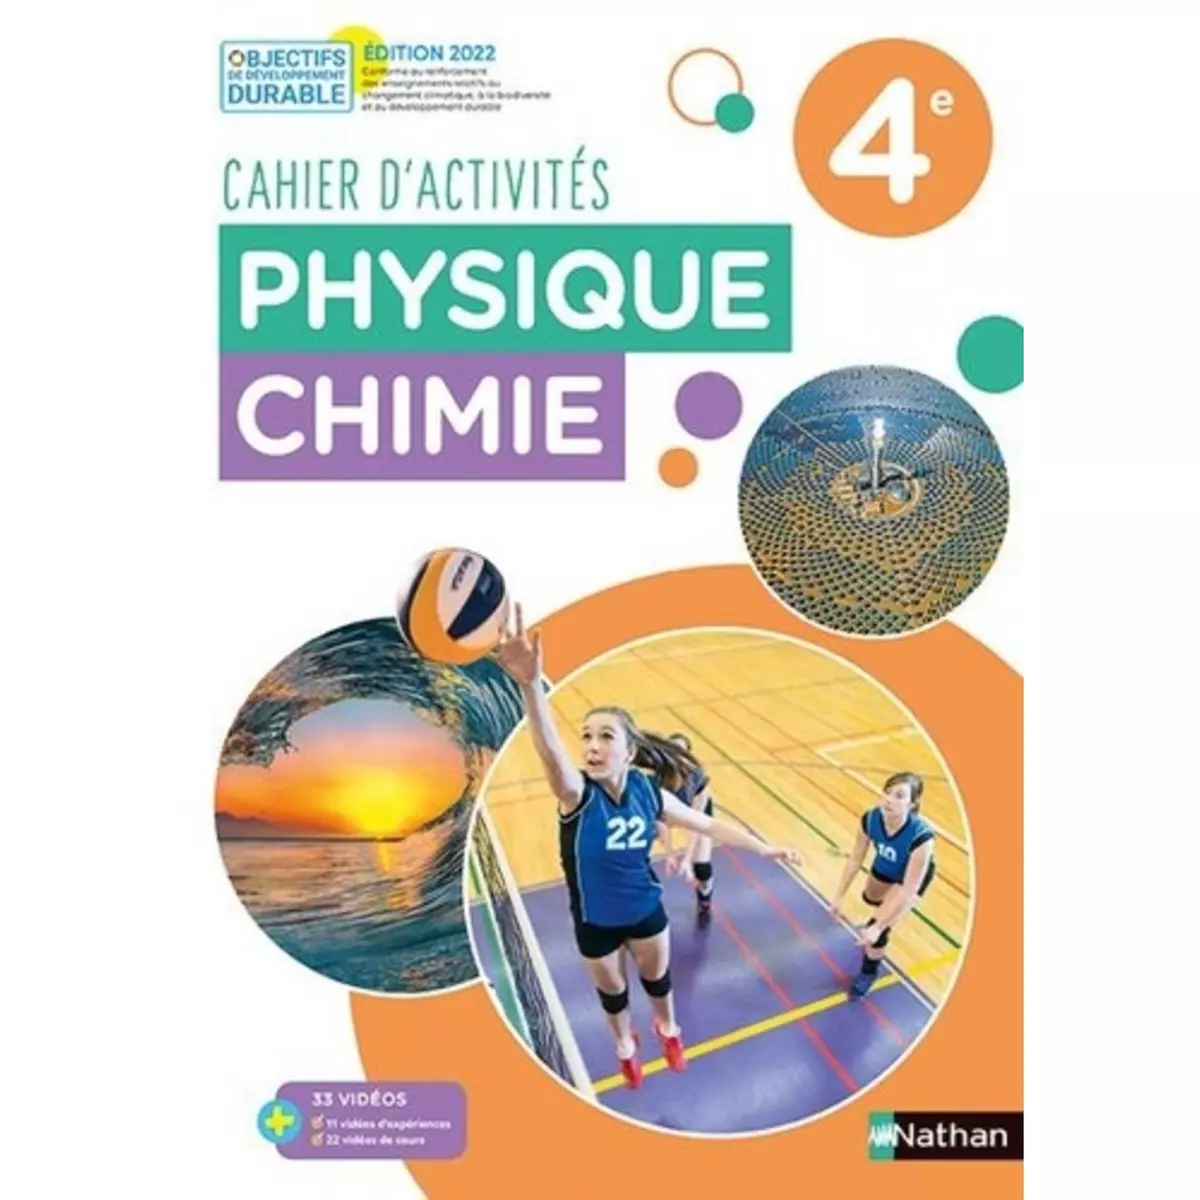  PHYSIQUE CHIMIE 4E. CAHIER D'ACTIVITES, EDITION 2022, Coppens Nicolas